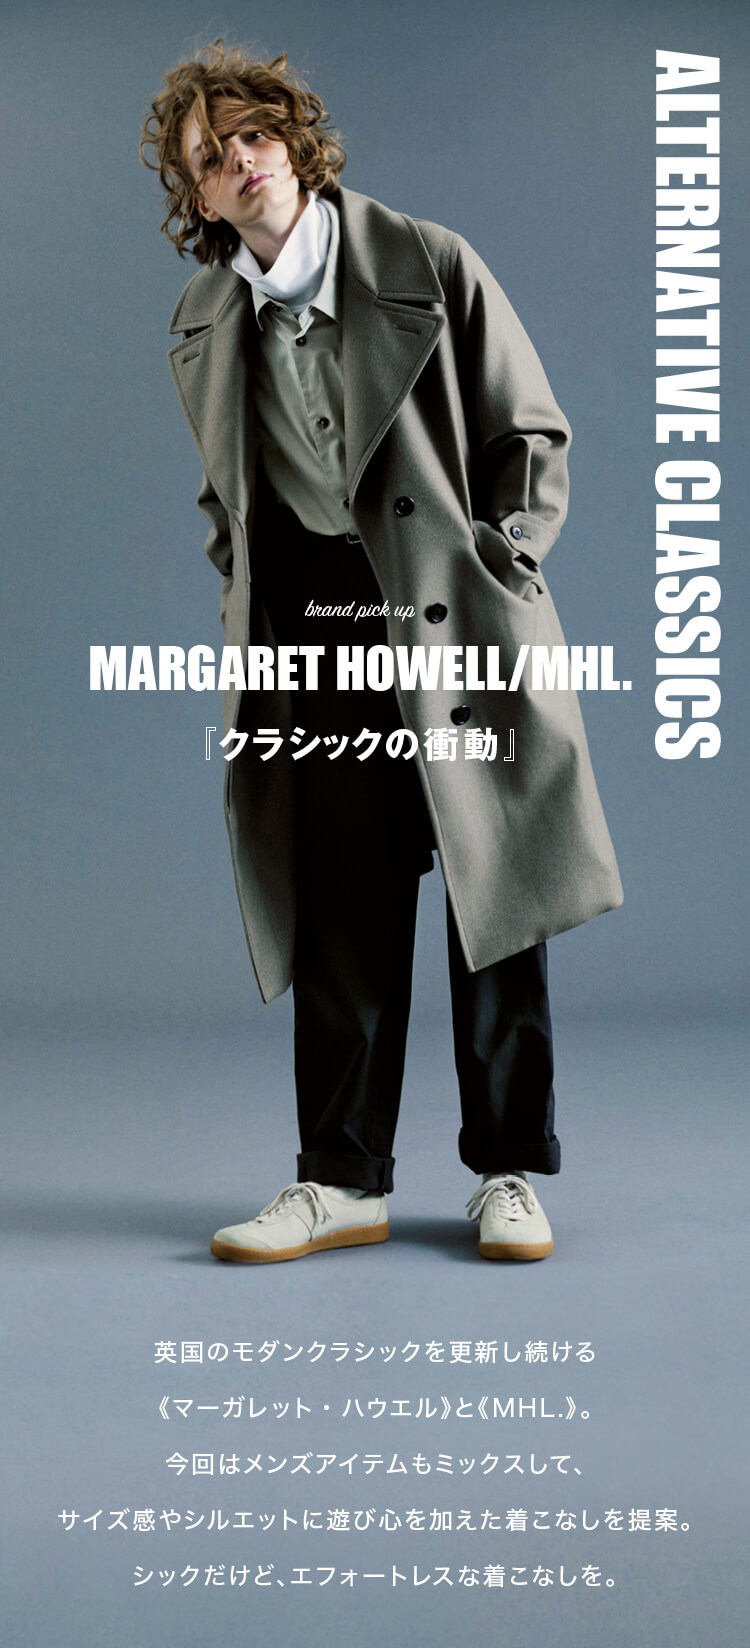 margarethowell-mhl_model